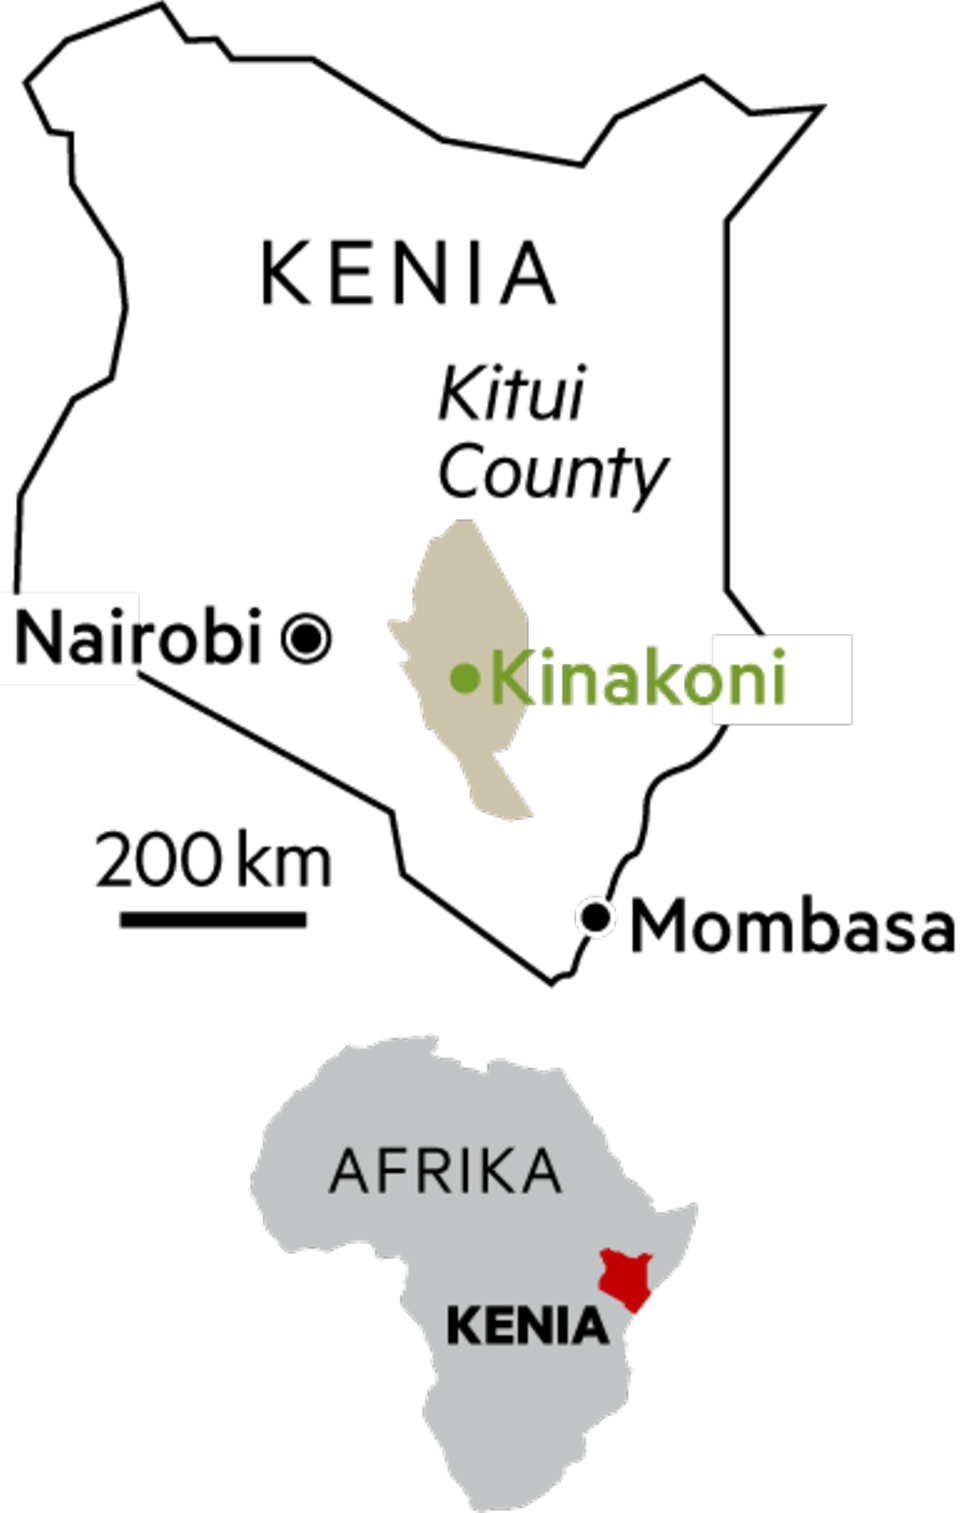 Kinakoni liegt etwa 250 Kilometer südöstlich von Kenias Hauptstadt Nairobi. Etwa 5000 Menschen leben hier